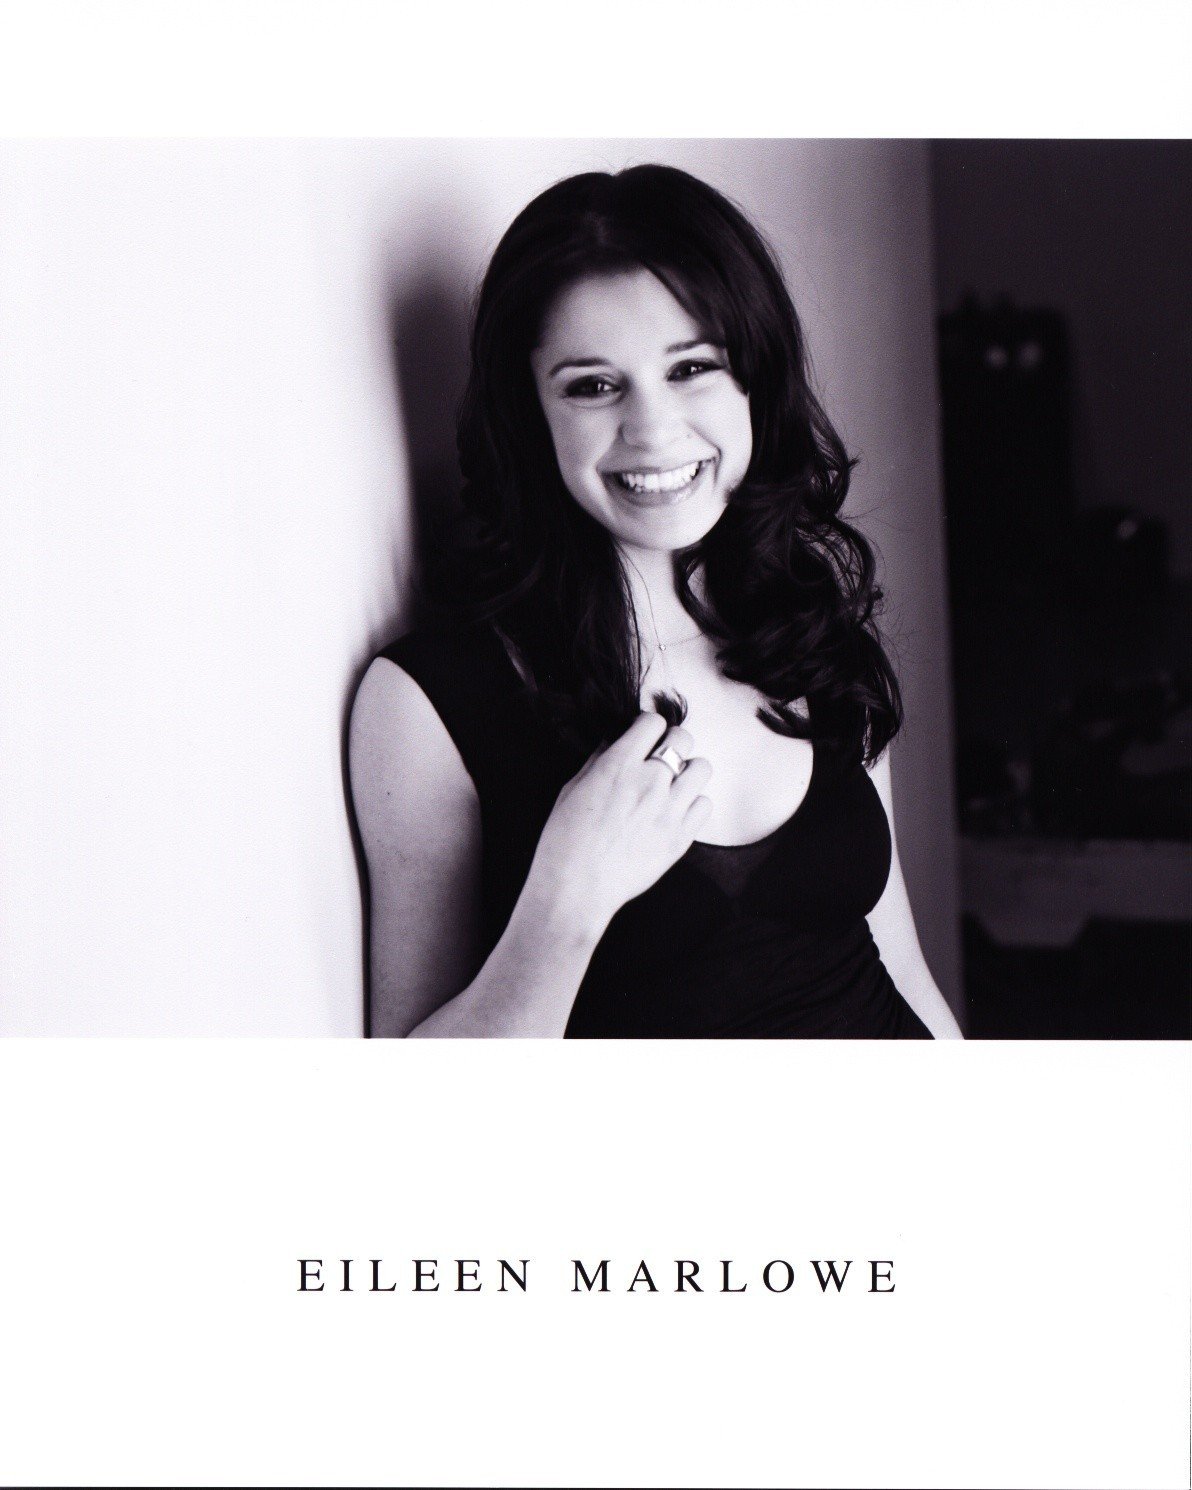 Eileen Marlowe